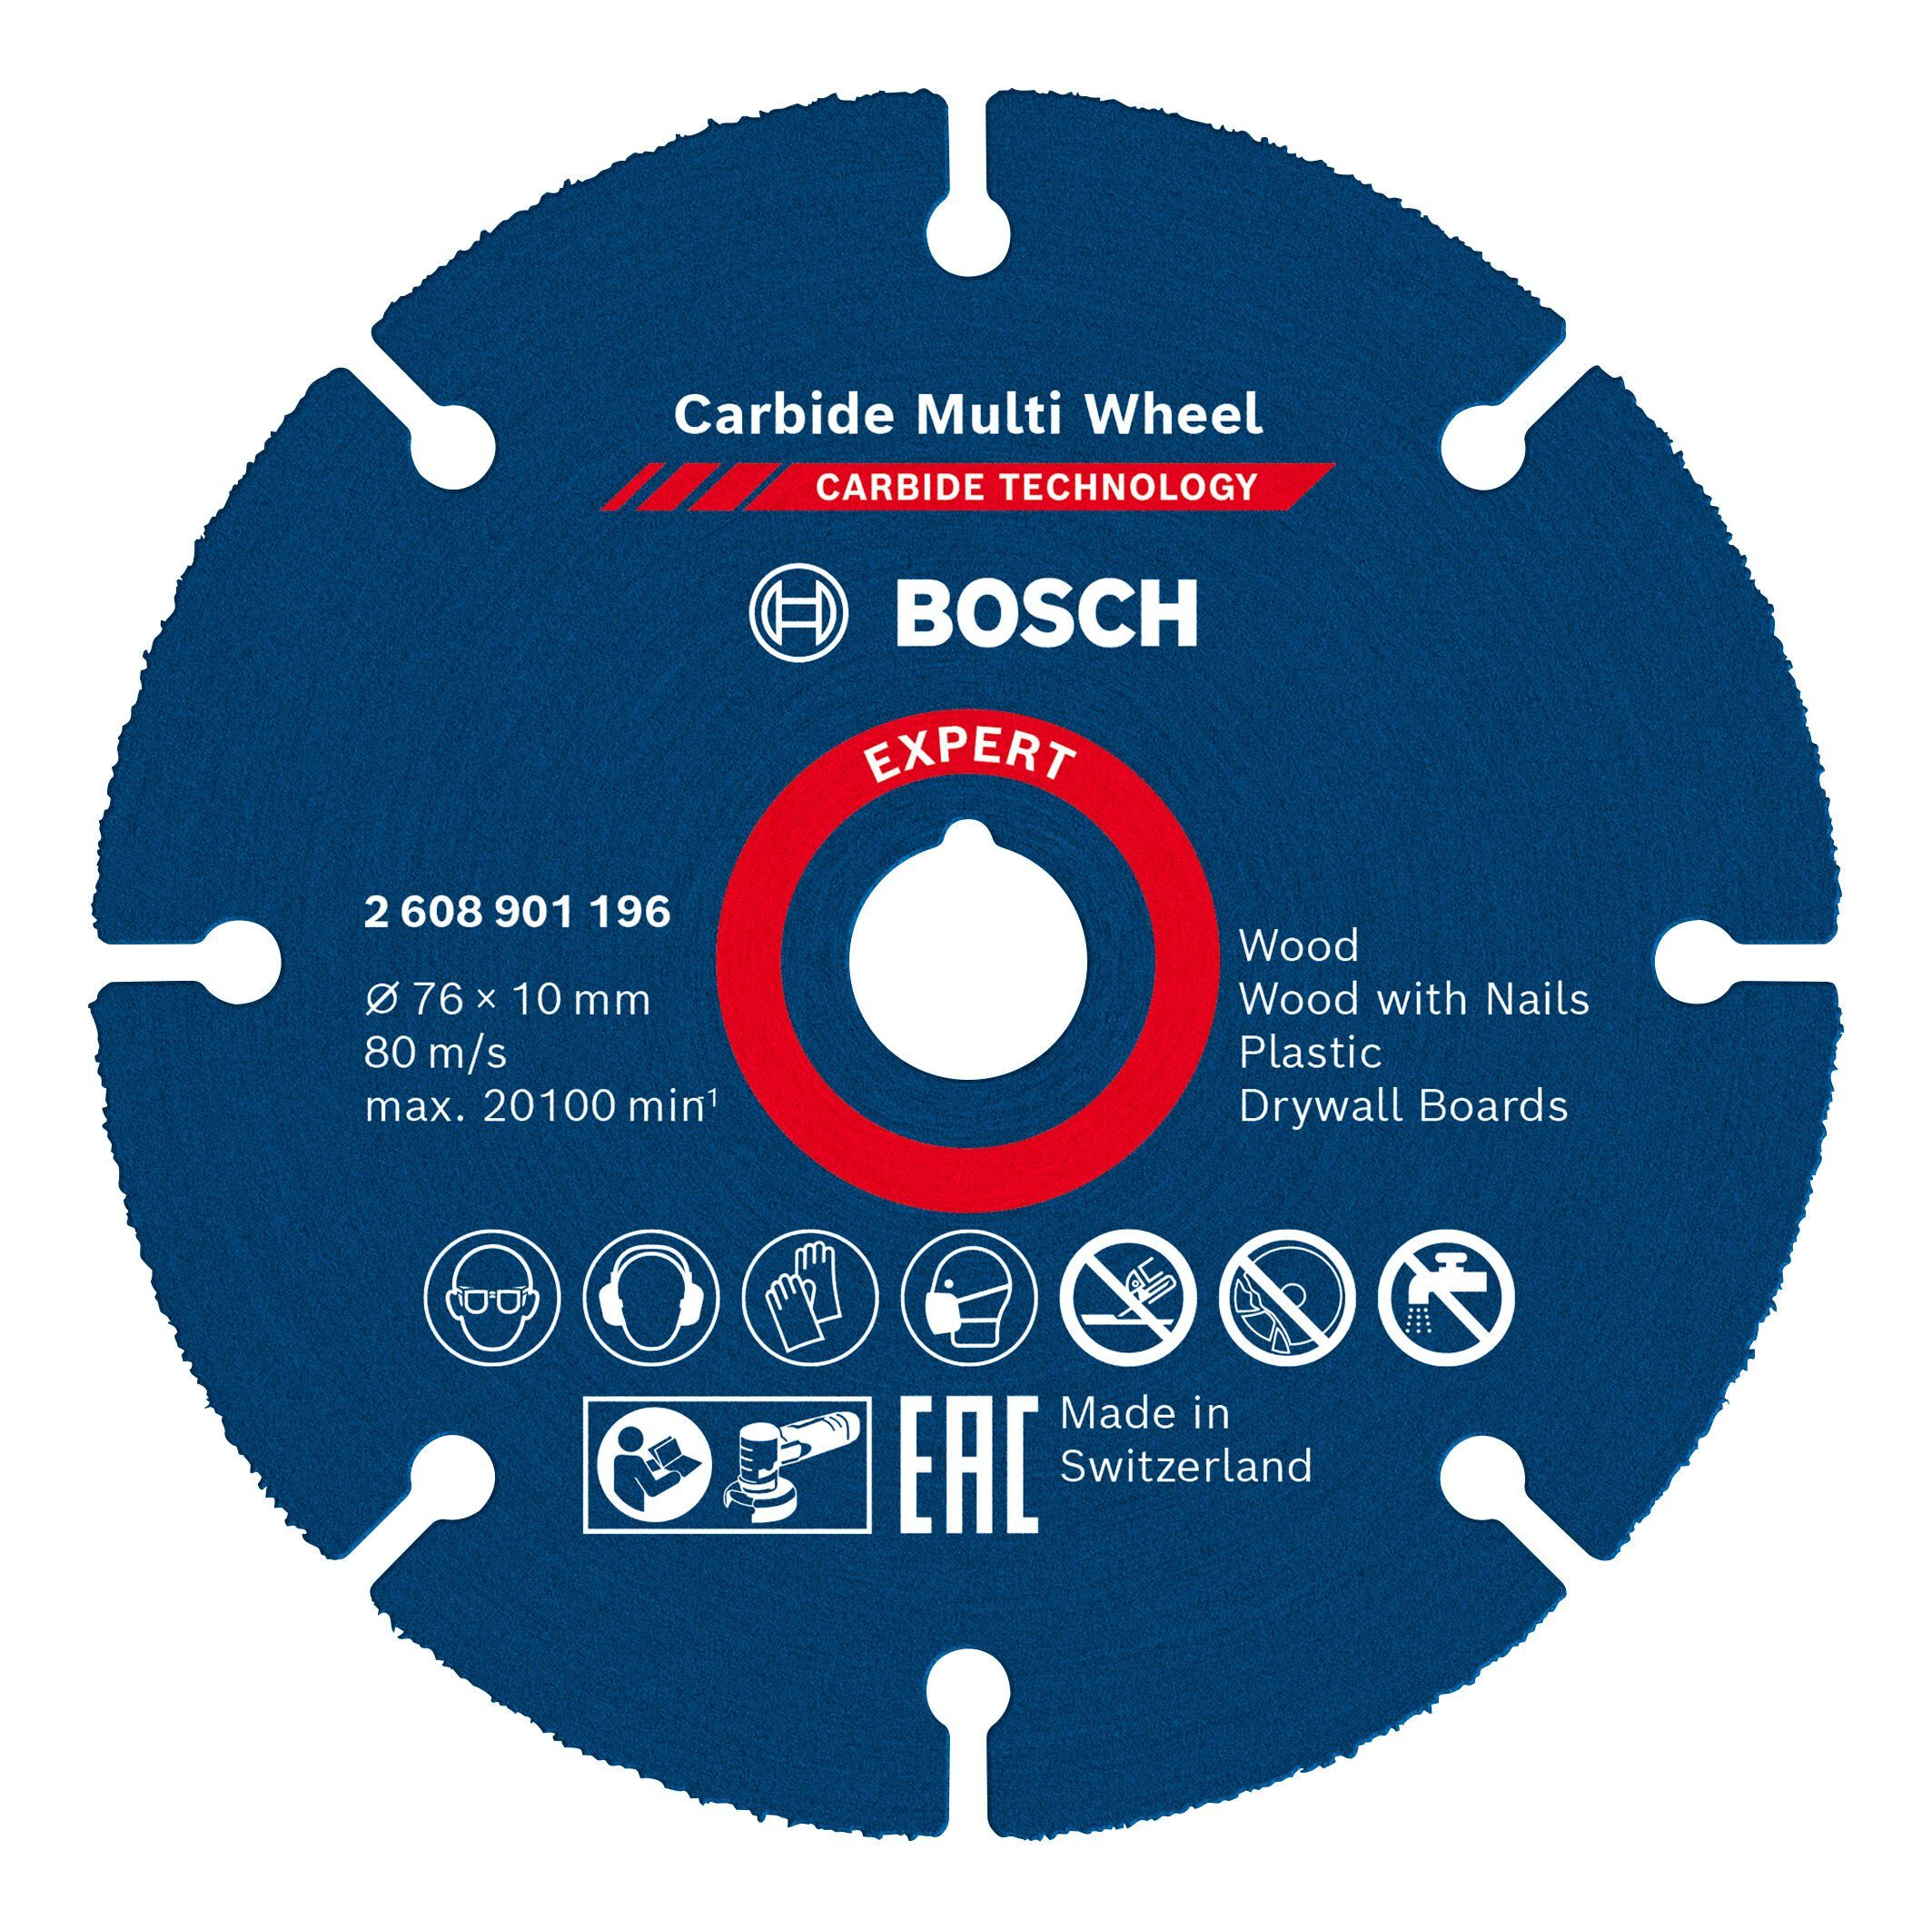 Expert 10 BOSCH mm mm, Carbide Wheel, 76 x Trennscheibe 76 1 Multi x Ø